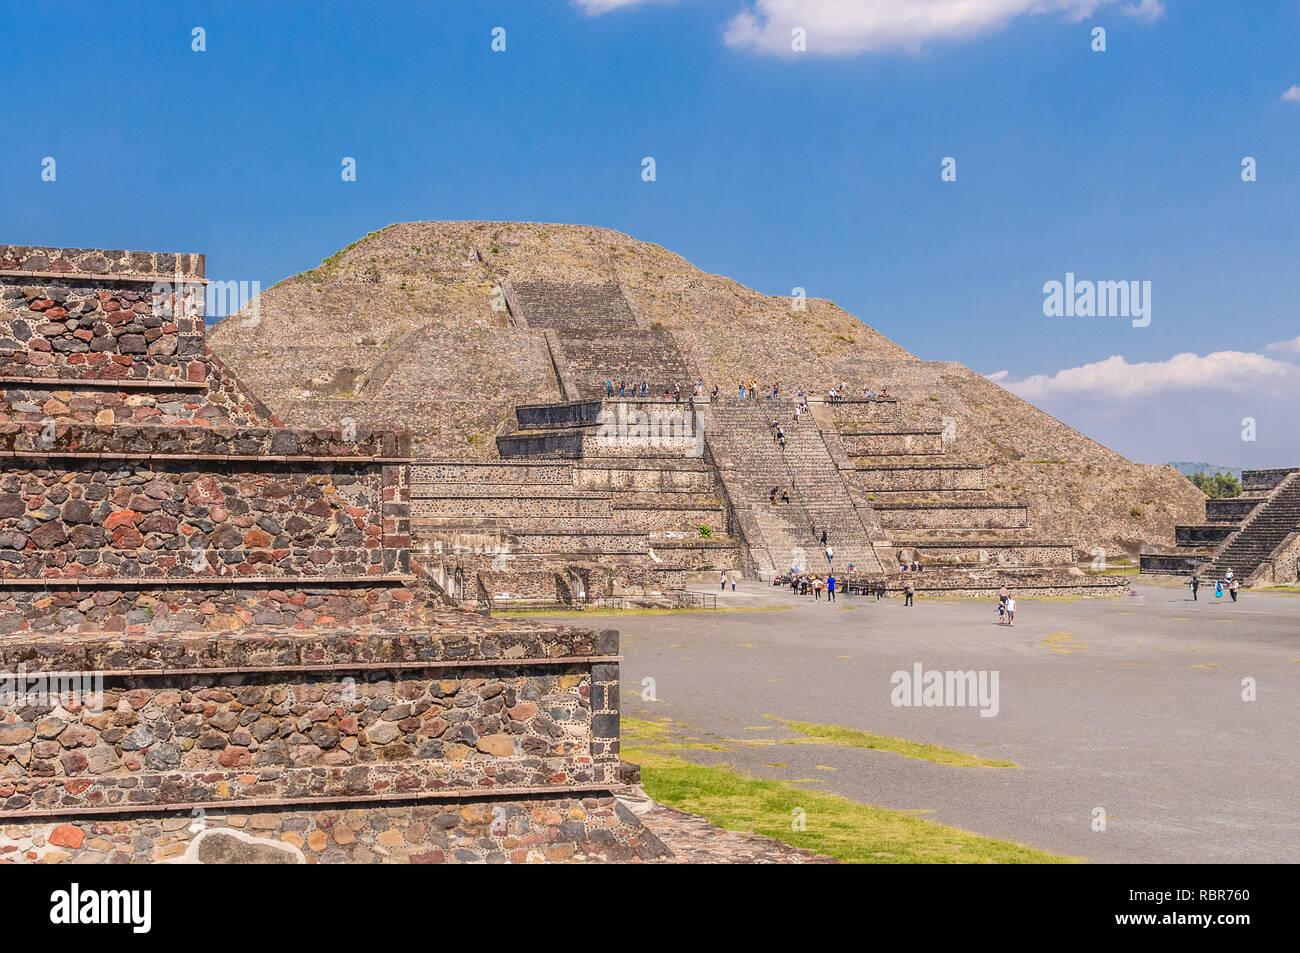 Schöner Blick auf die Pyramide des Mondes in der archäologischen Stätte von Teotihuacan, ein Muss Sehenswürdigkeiten in der Nähe von Mexico City anzeigen Stockfoto